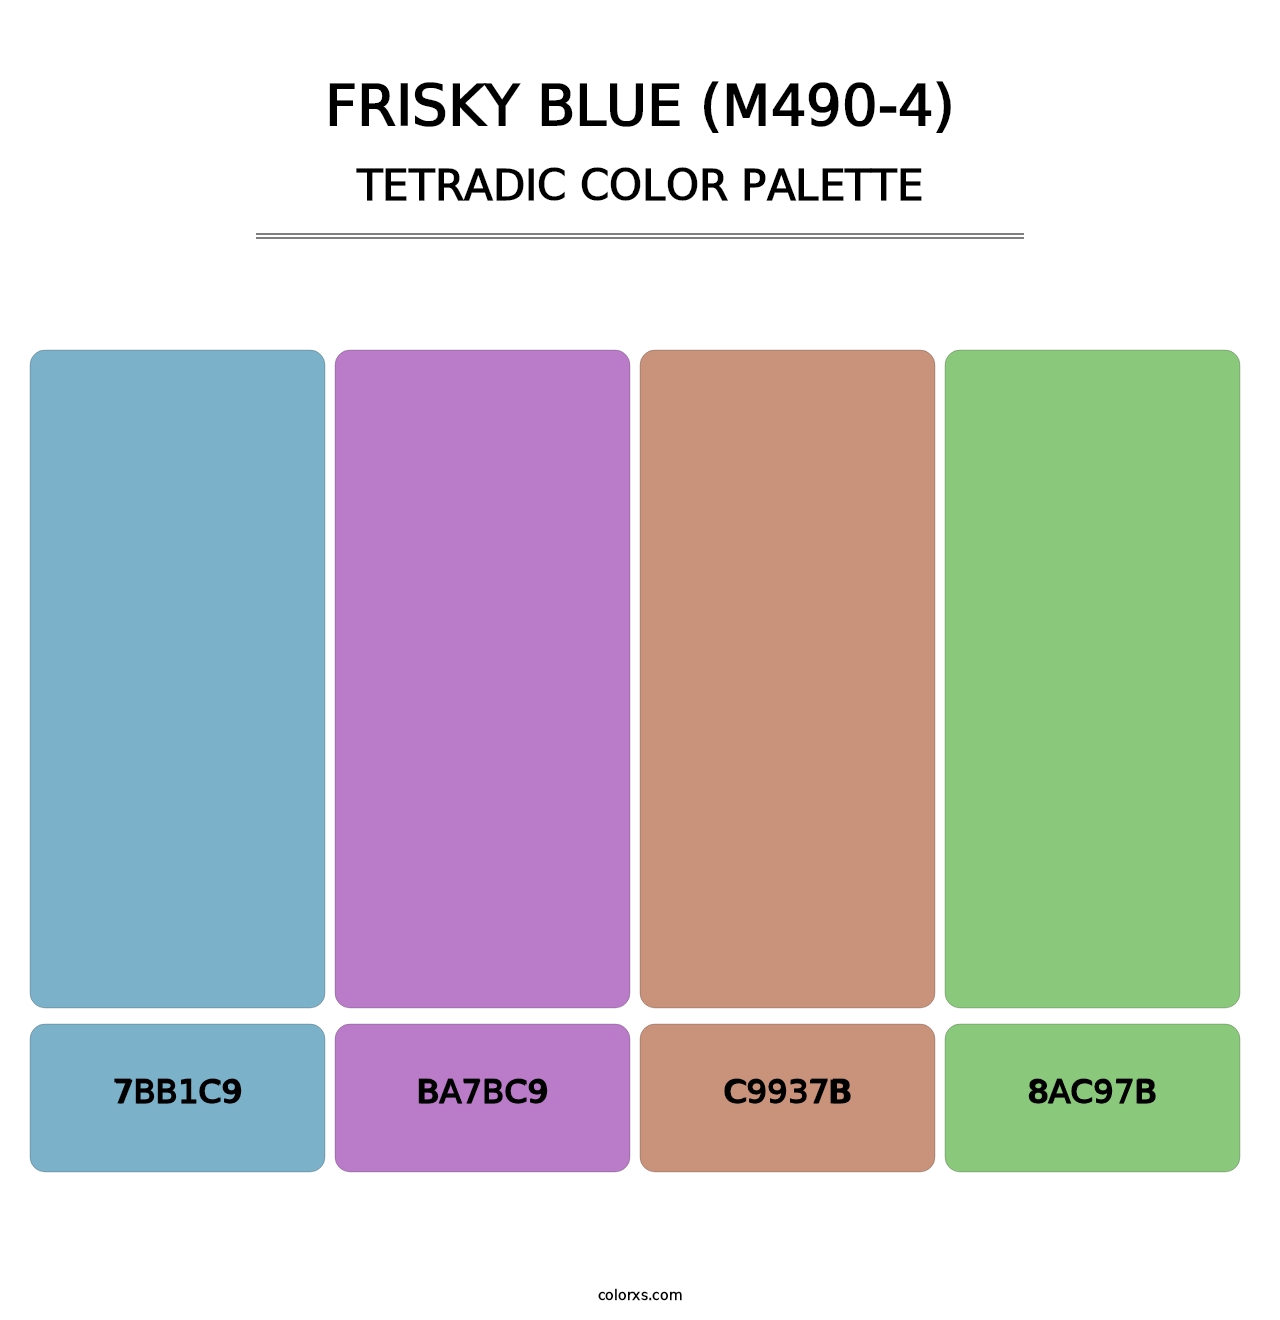 Frisky Blue (M490-4) - Tetradic Color Palette